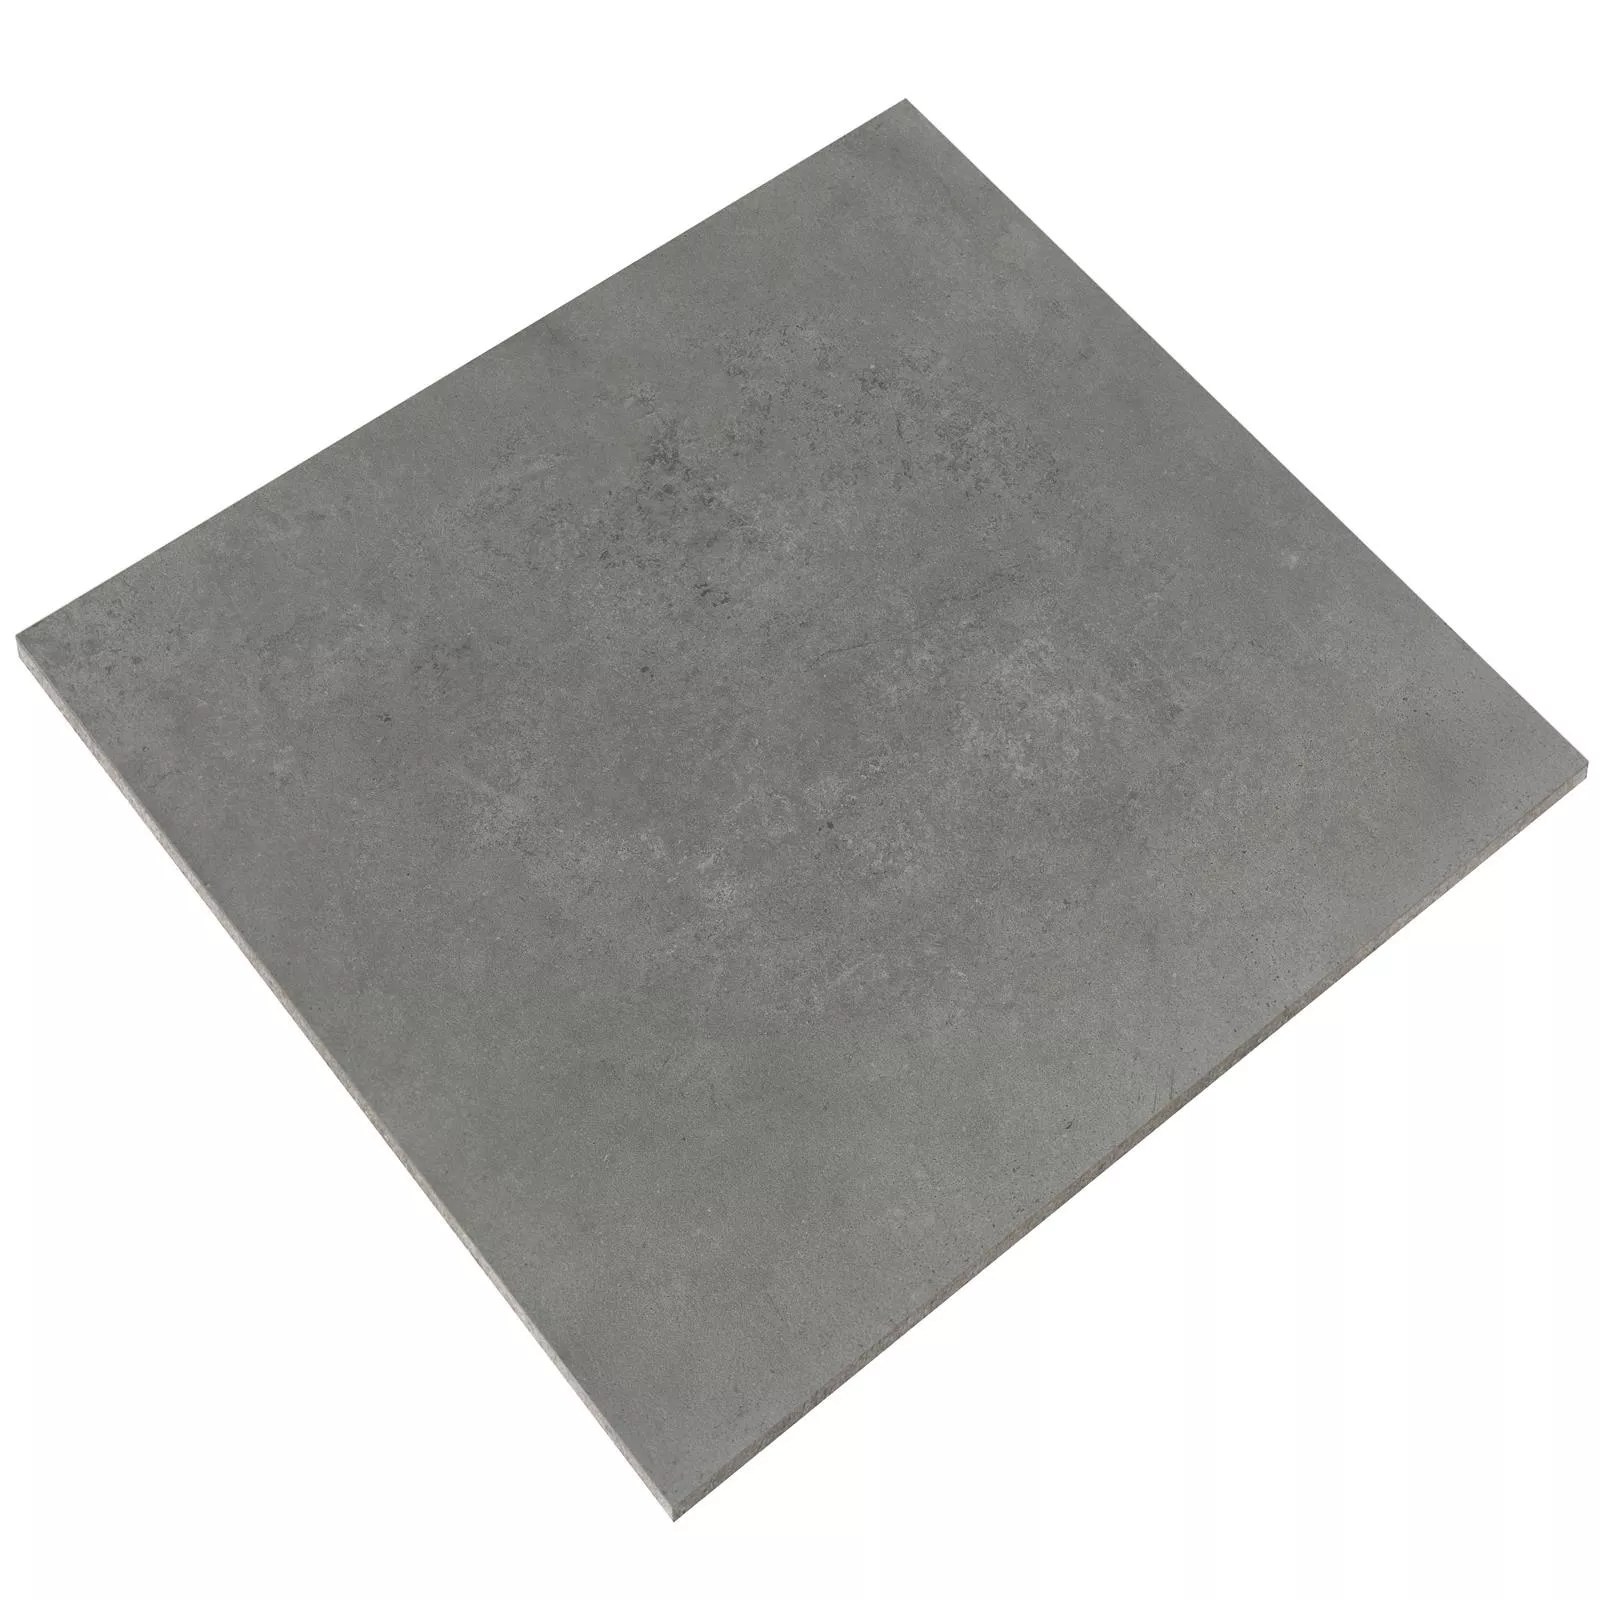 Πλακάκια Δαπέδου Nepal Σκούρο Γκρι 60x60x0,7cm